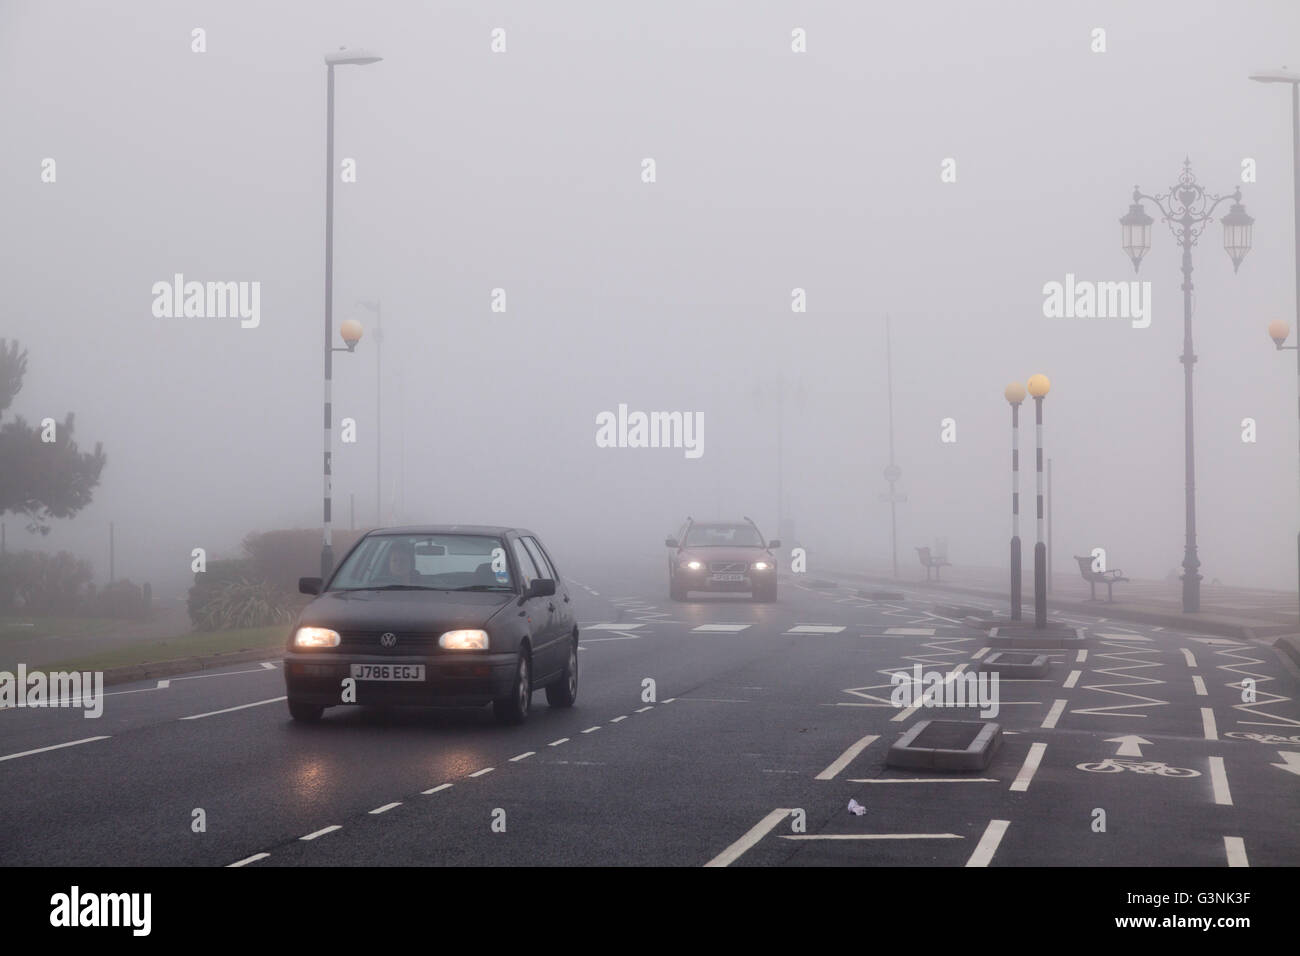 Le automobili in ambiente urbano con la segnaletica stradale orizzontale su un nebbioso giorno con luci di posizione accese, Portsmouth, Hampshire, Inghilterra Foto Stock